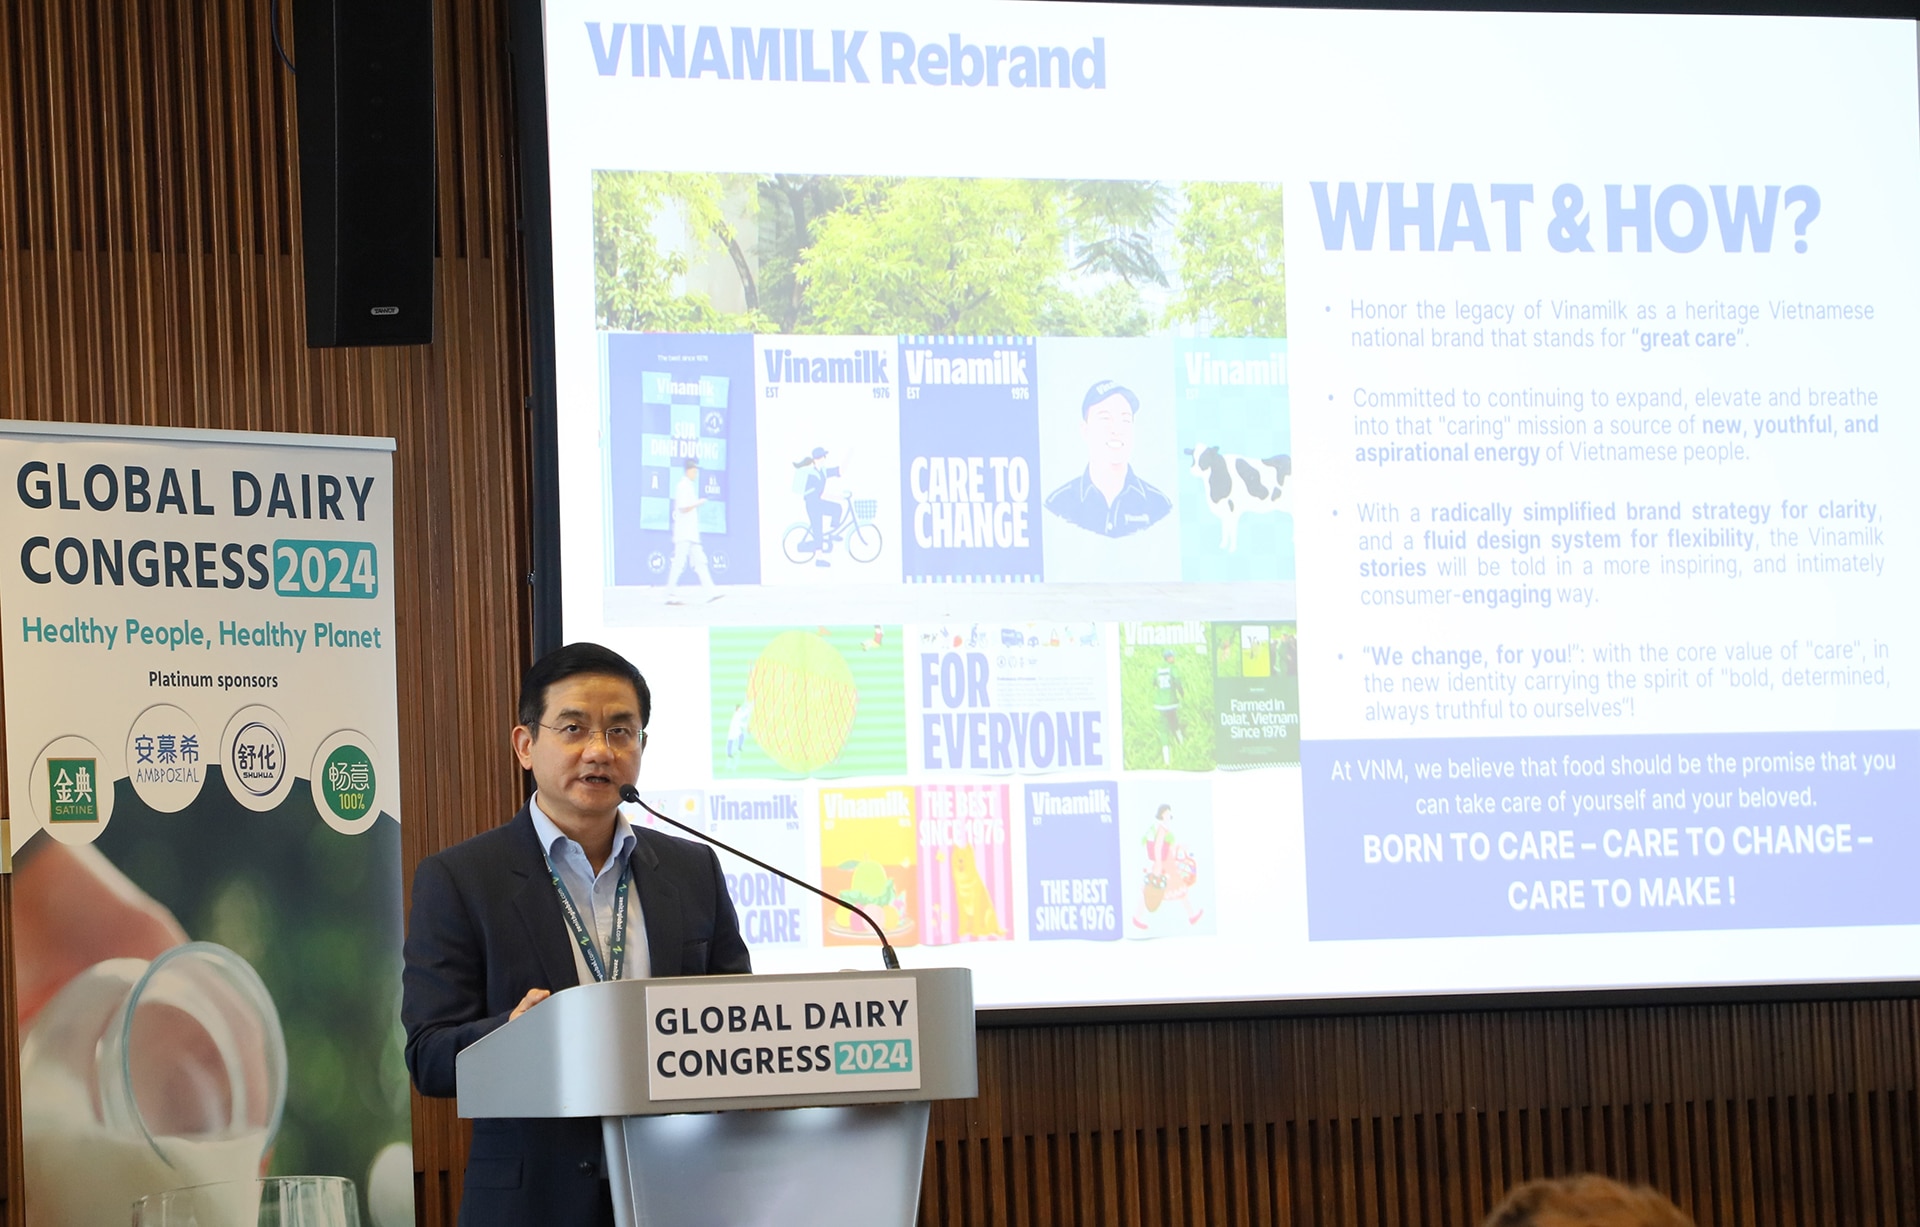 Ông Nguyễn Quang Trí, Giám đốc điều hành Marketing Vinamilk, trình bày bài tham luận về chiến lược đổi mới và phát triển bền vững của Vinamilk, với thông điệp 